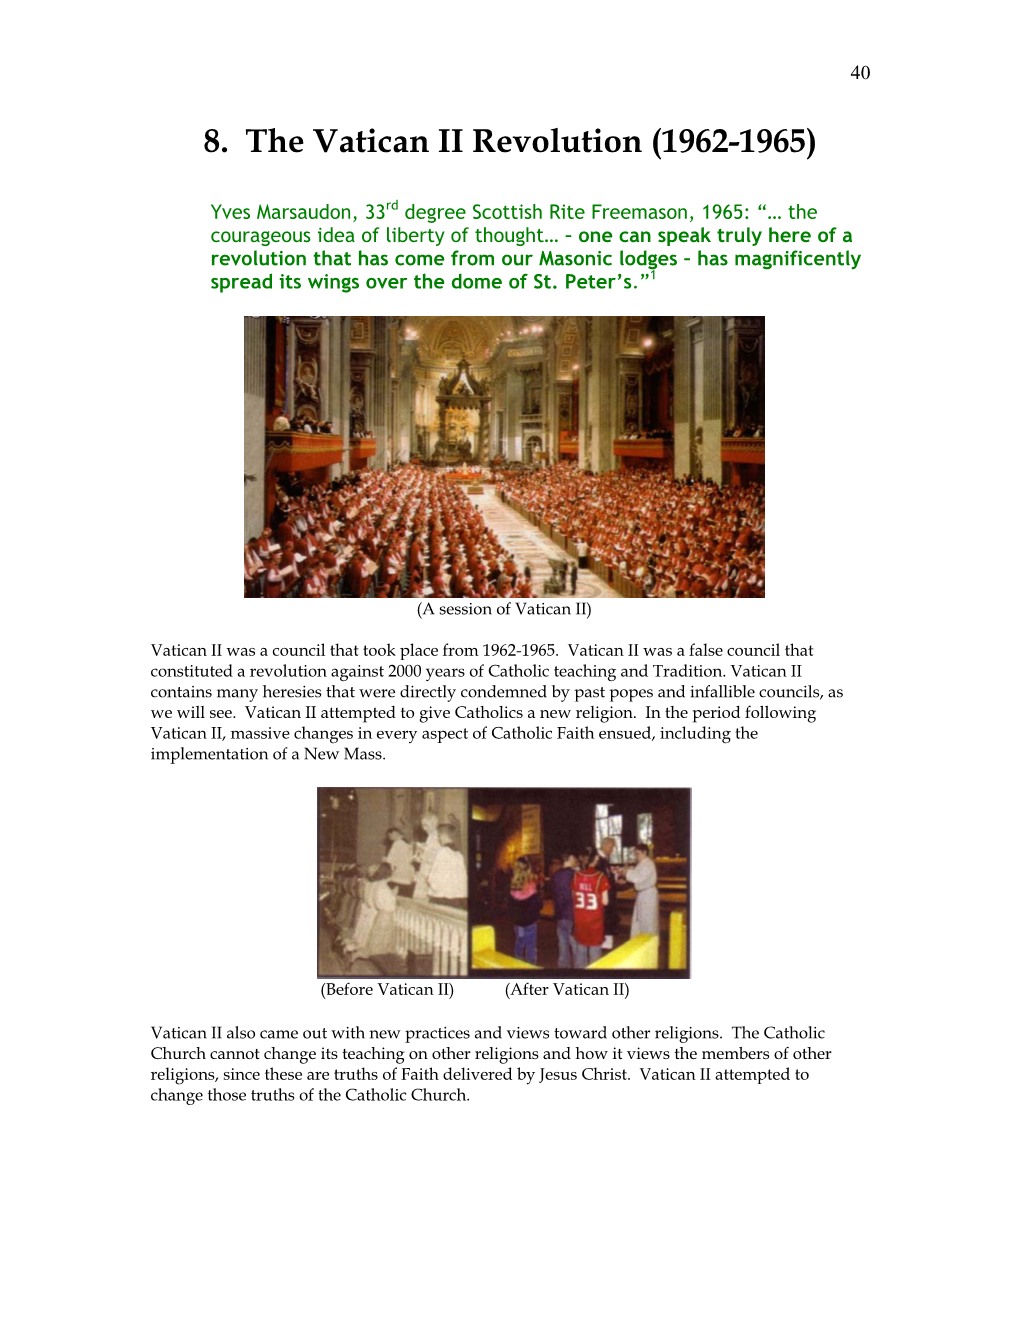 The Heresies in Vatican II 41